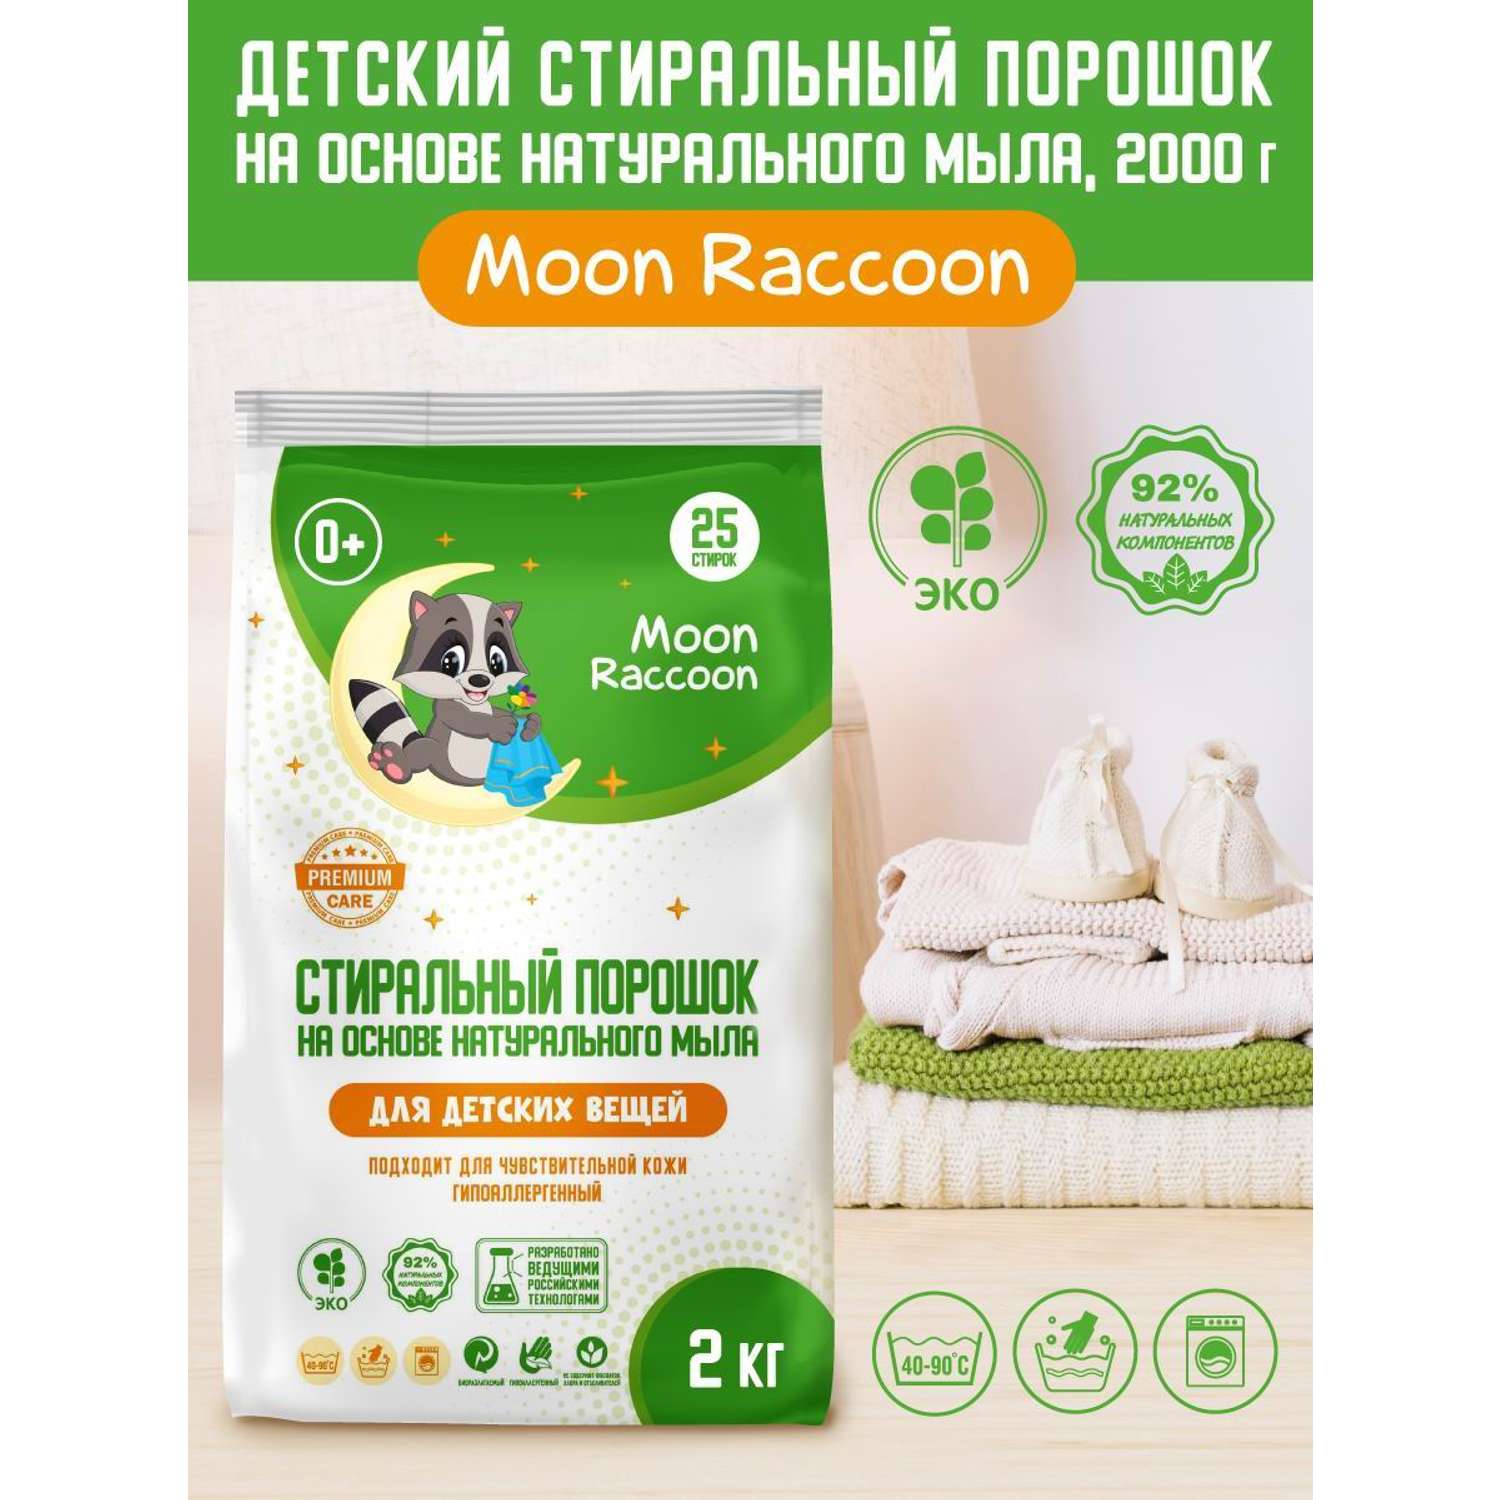 Стиральный порошок Moon Raccoon Premium Care детский на основе натурального мыла экологичный гипоаллергенный 2000г - фото 1